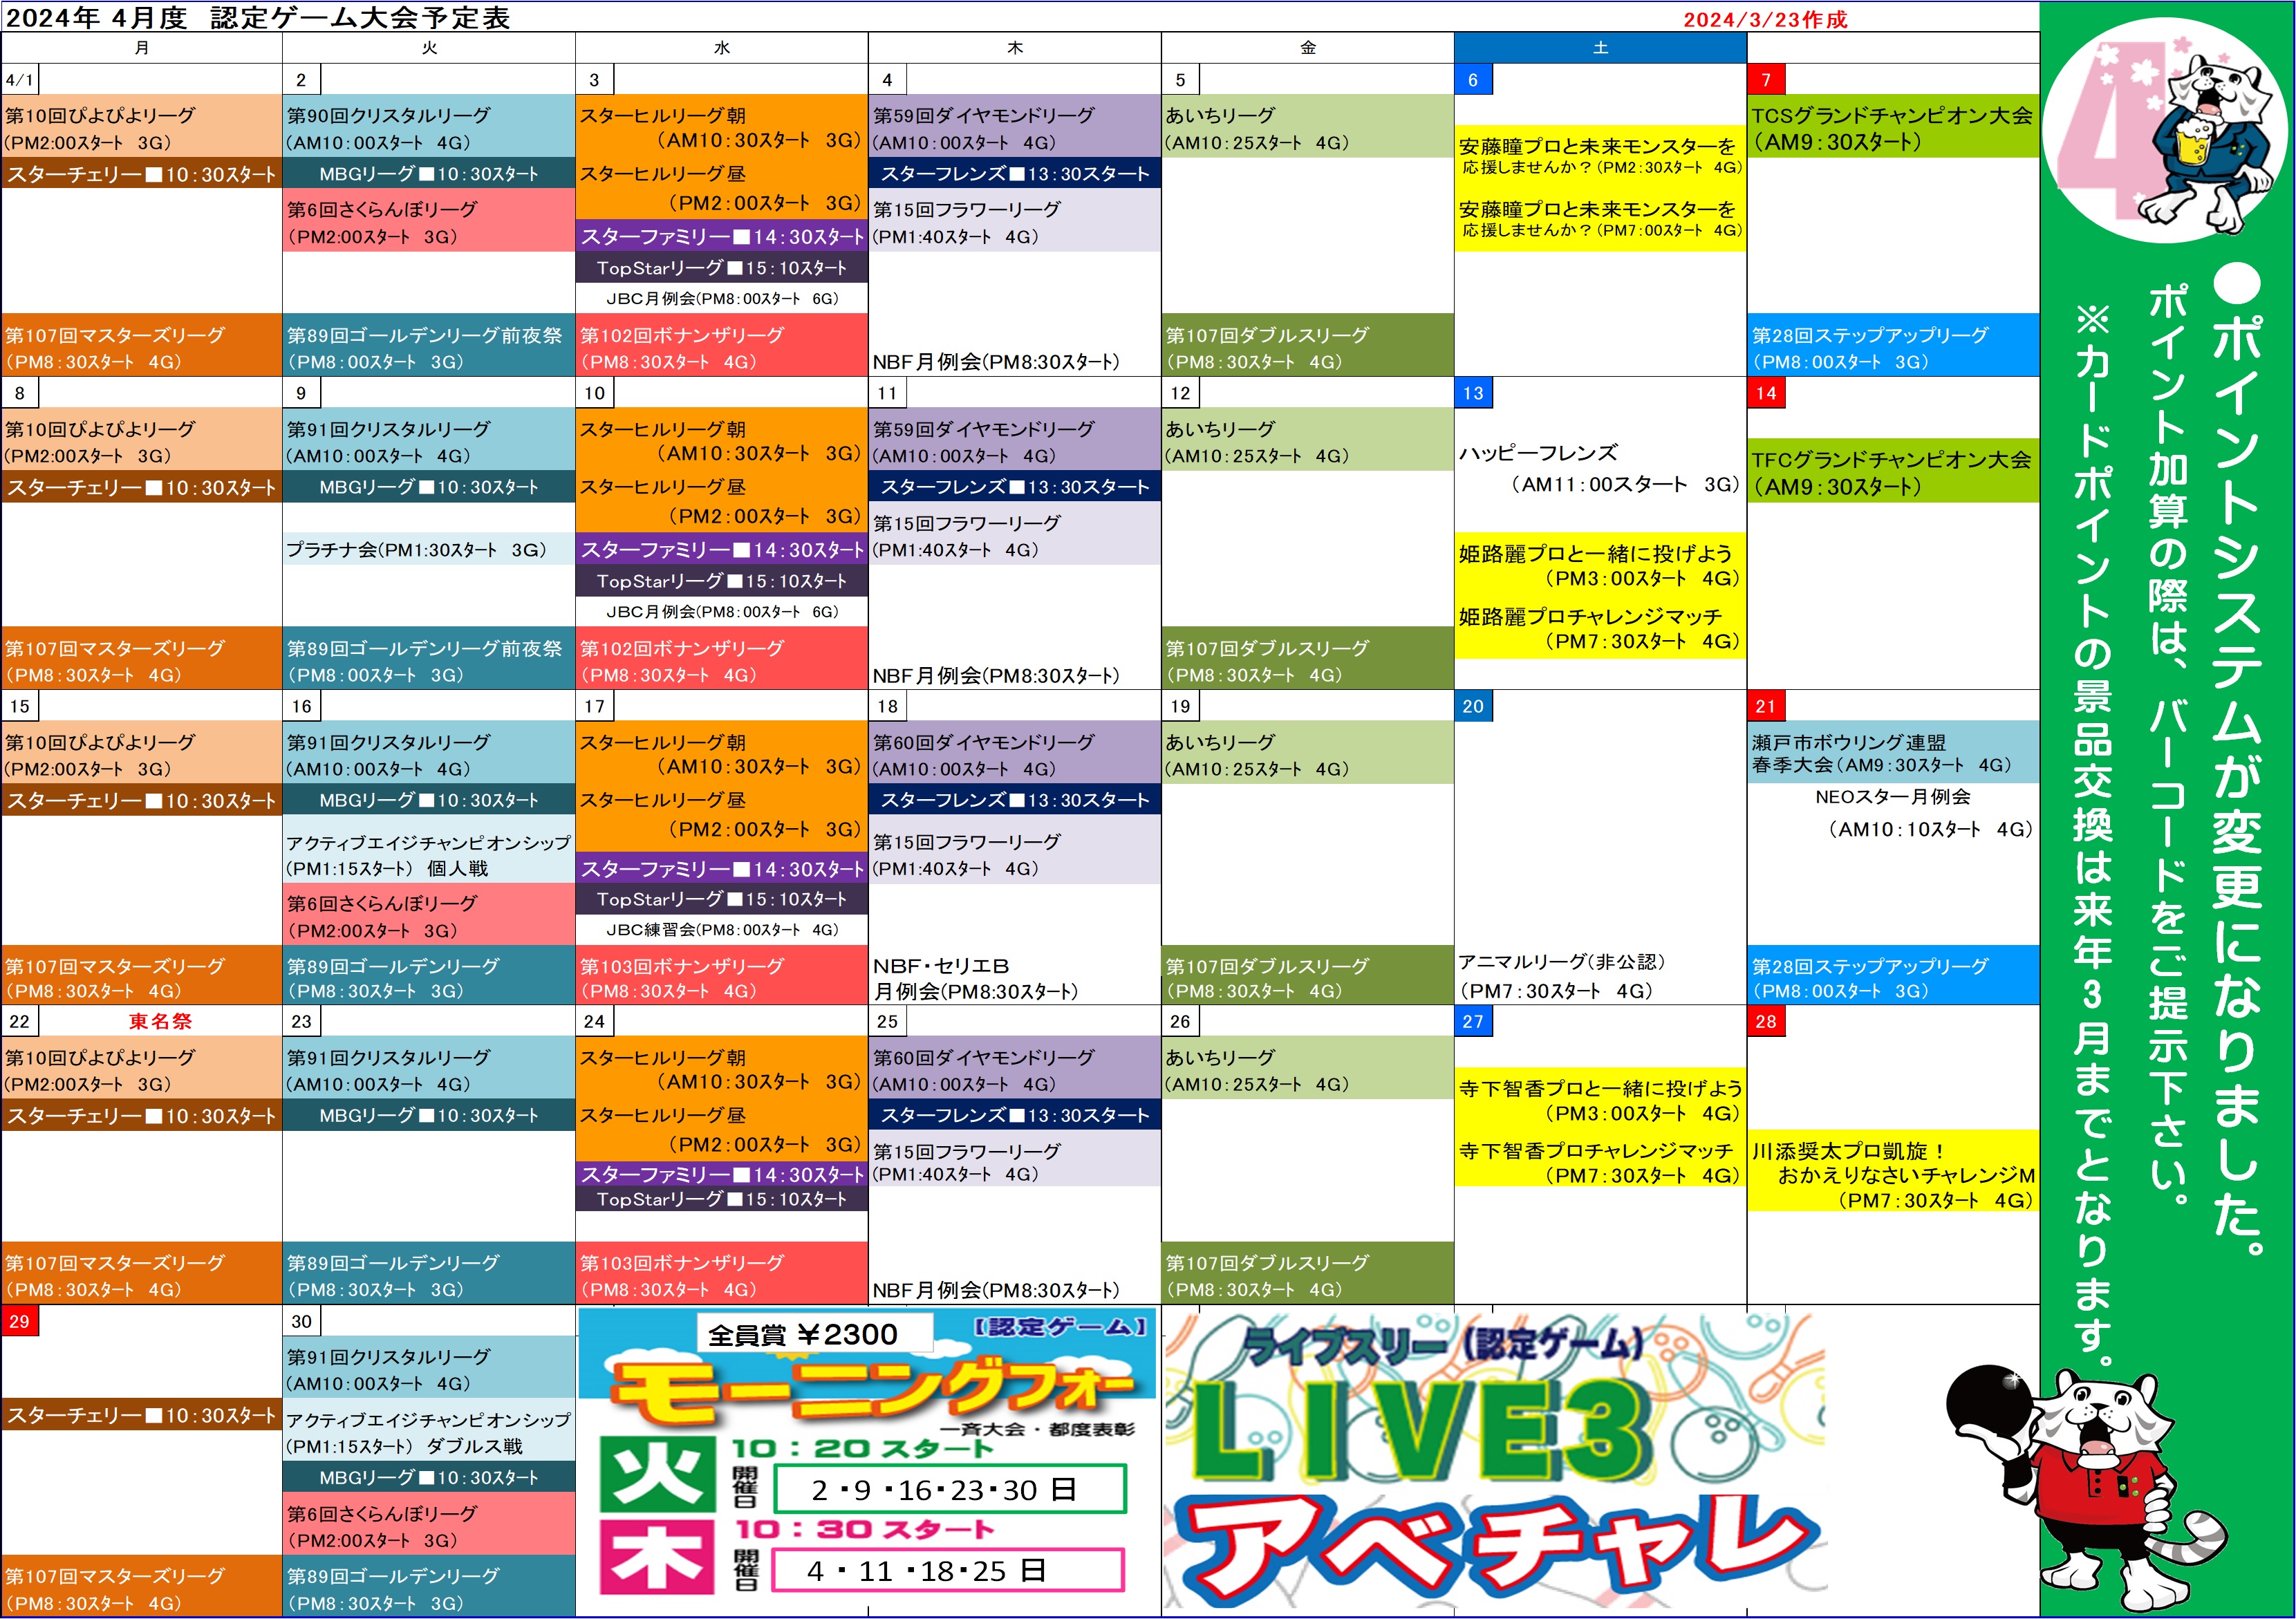 ★会員様向け★2024年4月認定ゲーム大会予定表